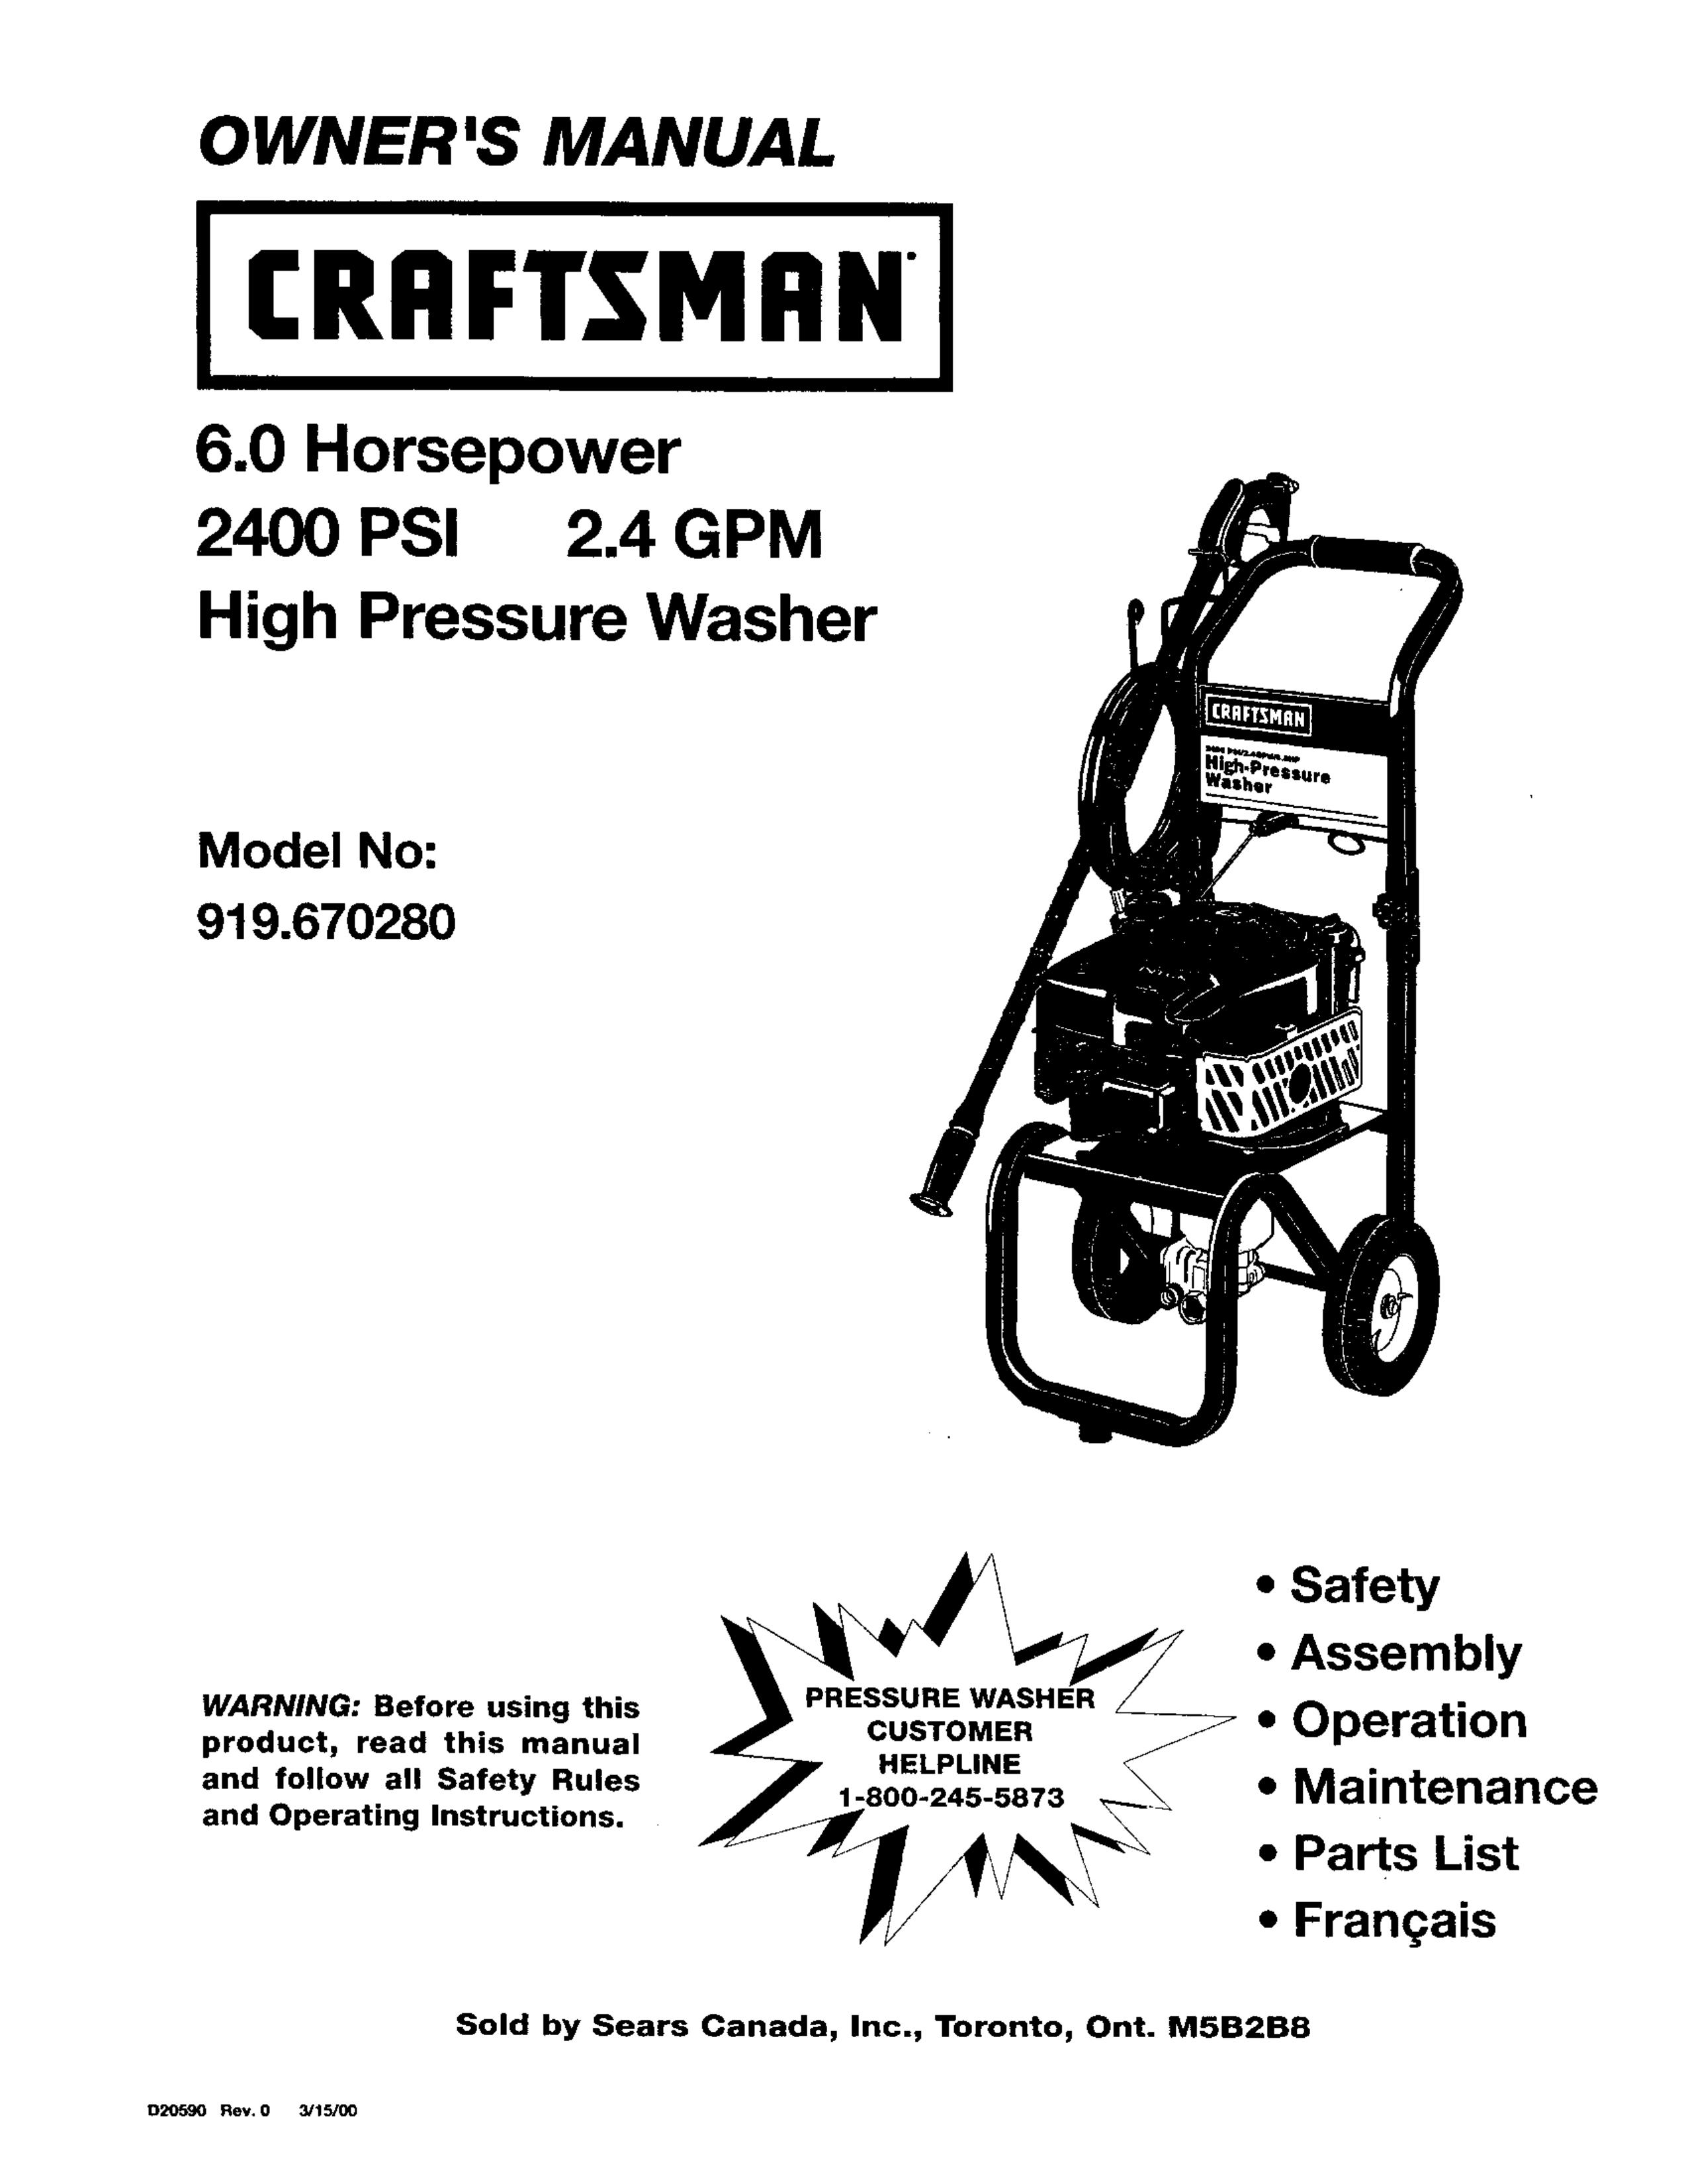 Craftsman 919.67028 Washer User Manual